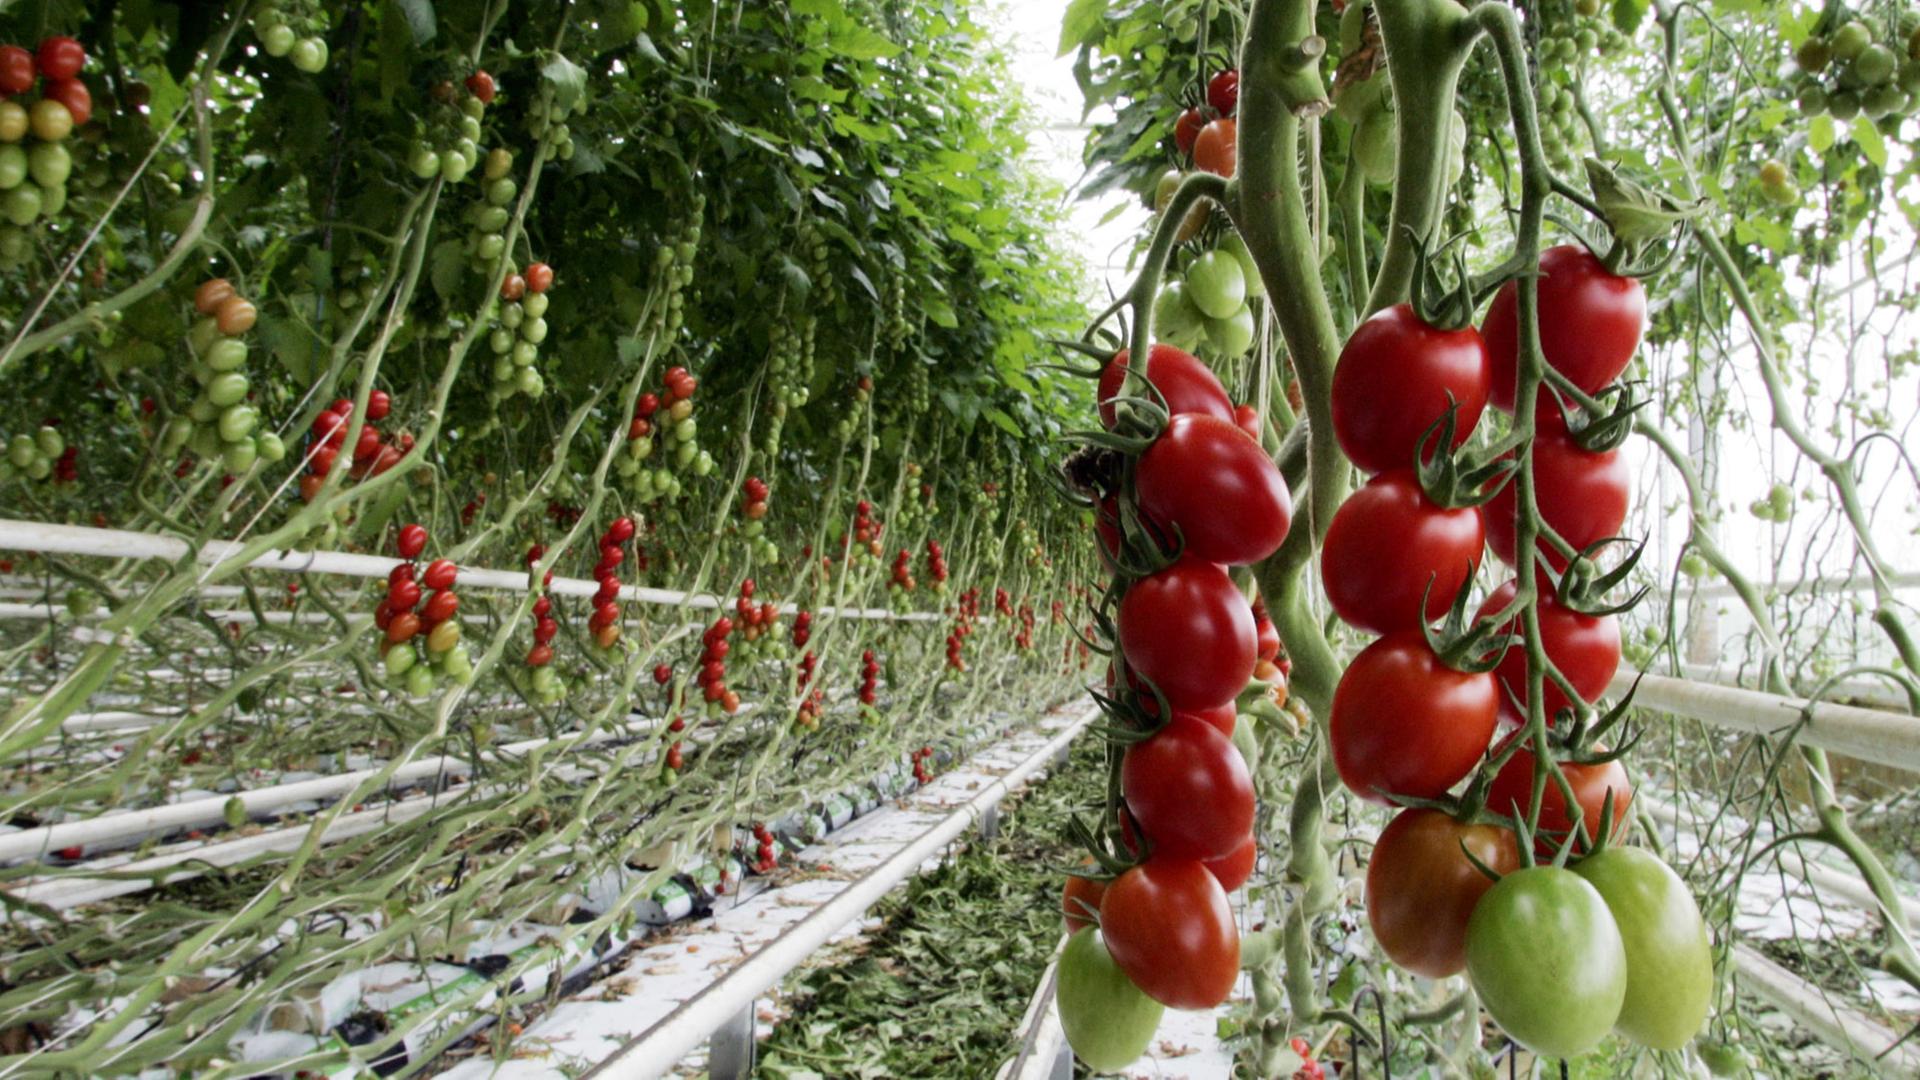 Tomaten hängen am Donnerstag (02.06.2005) im Gewächshaus des Gemüsebetriebes von Bauer van Cleef im niederrheinischen Rheurdt von der Gewächshausdecke. Für die Gewächshaus-Tomaten ist der Monat Juni die günstigste Erntezeit.